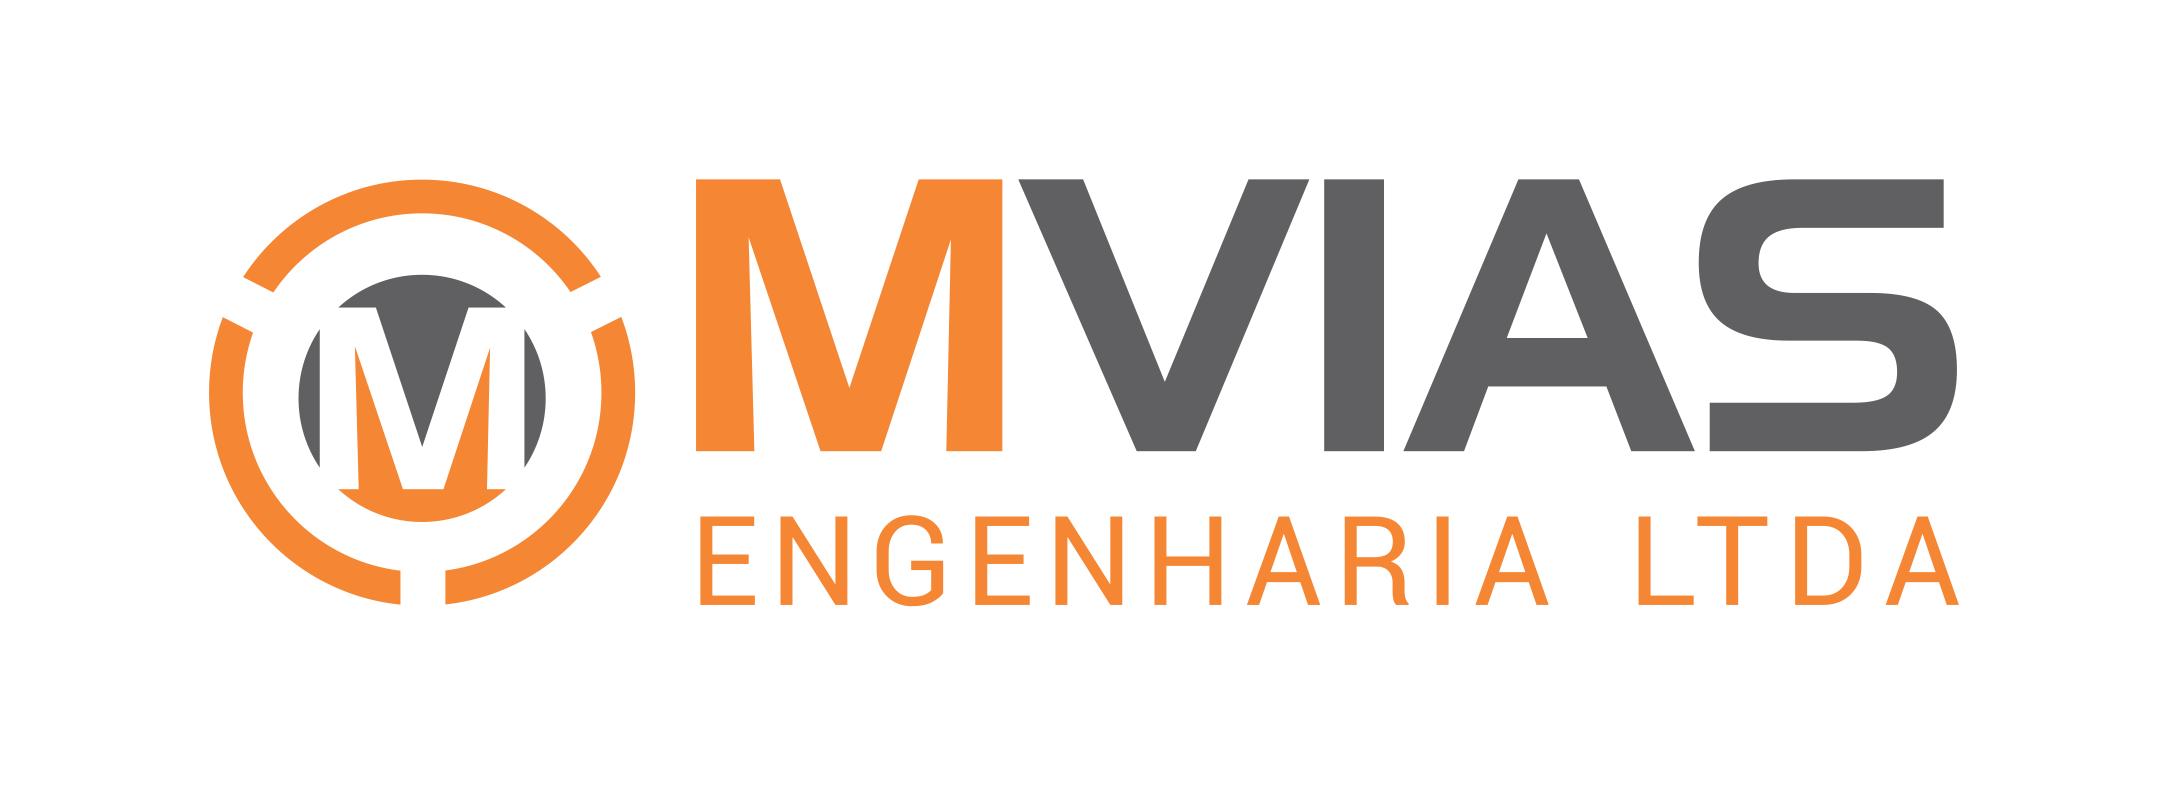 MVIAS ENGENHARIA